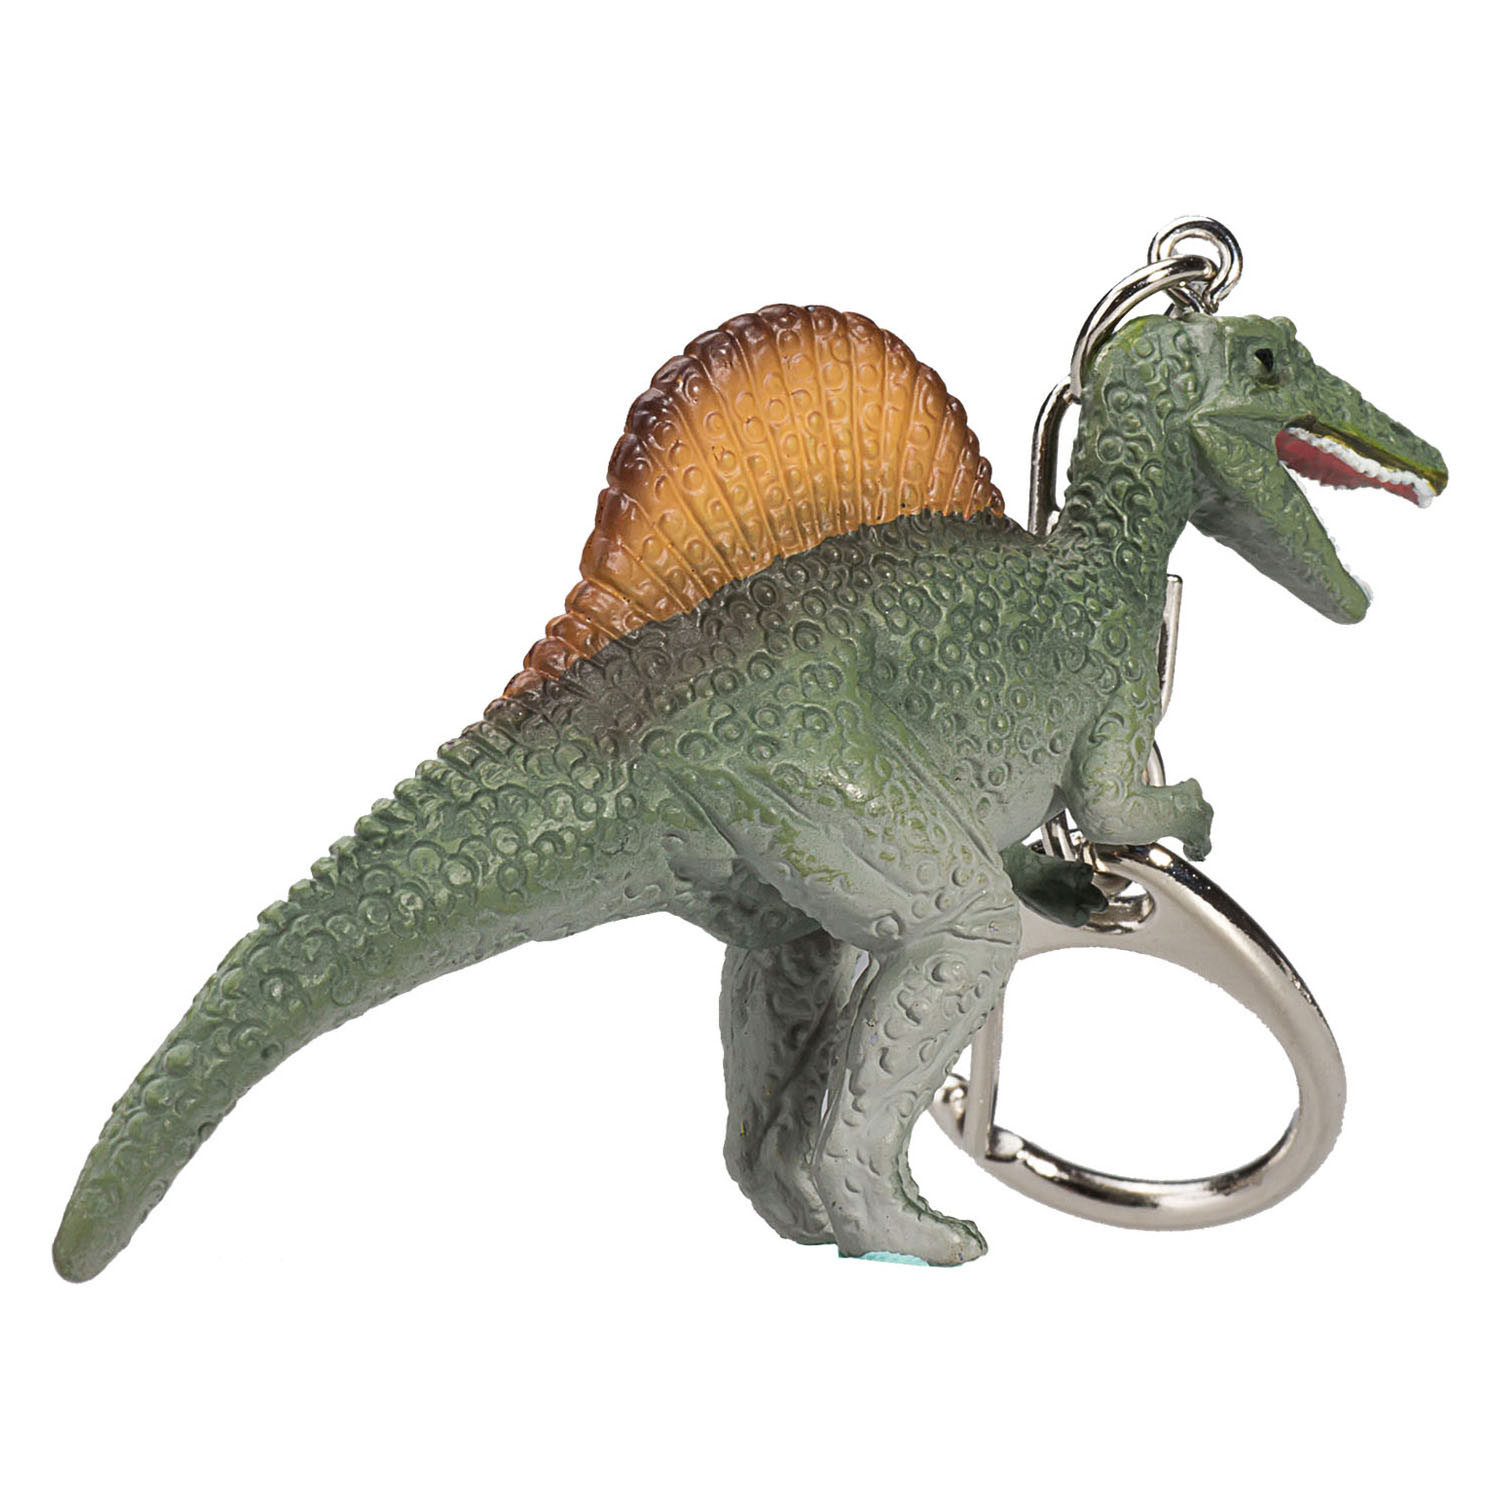 Mojo Schlüsselanhänger Spinosaurus - 387452